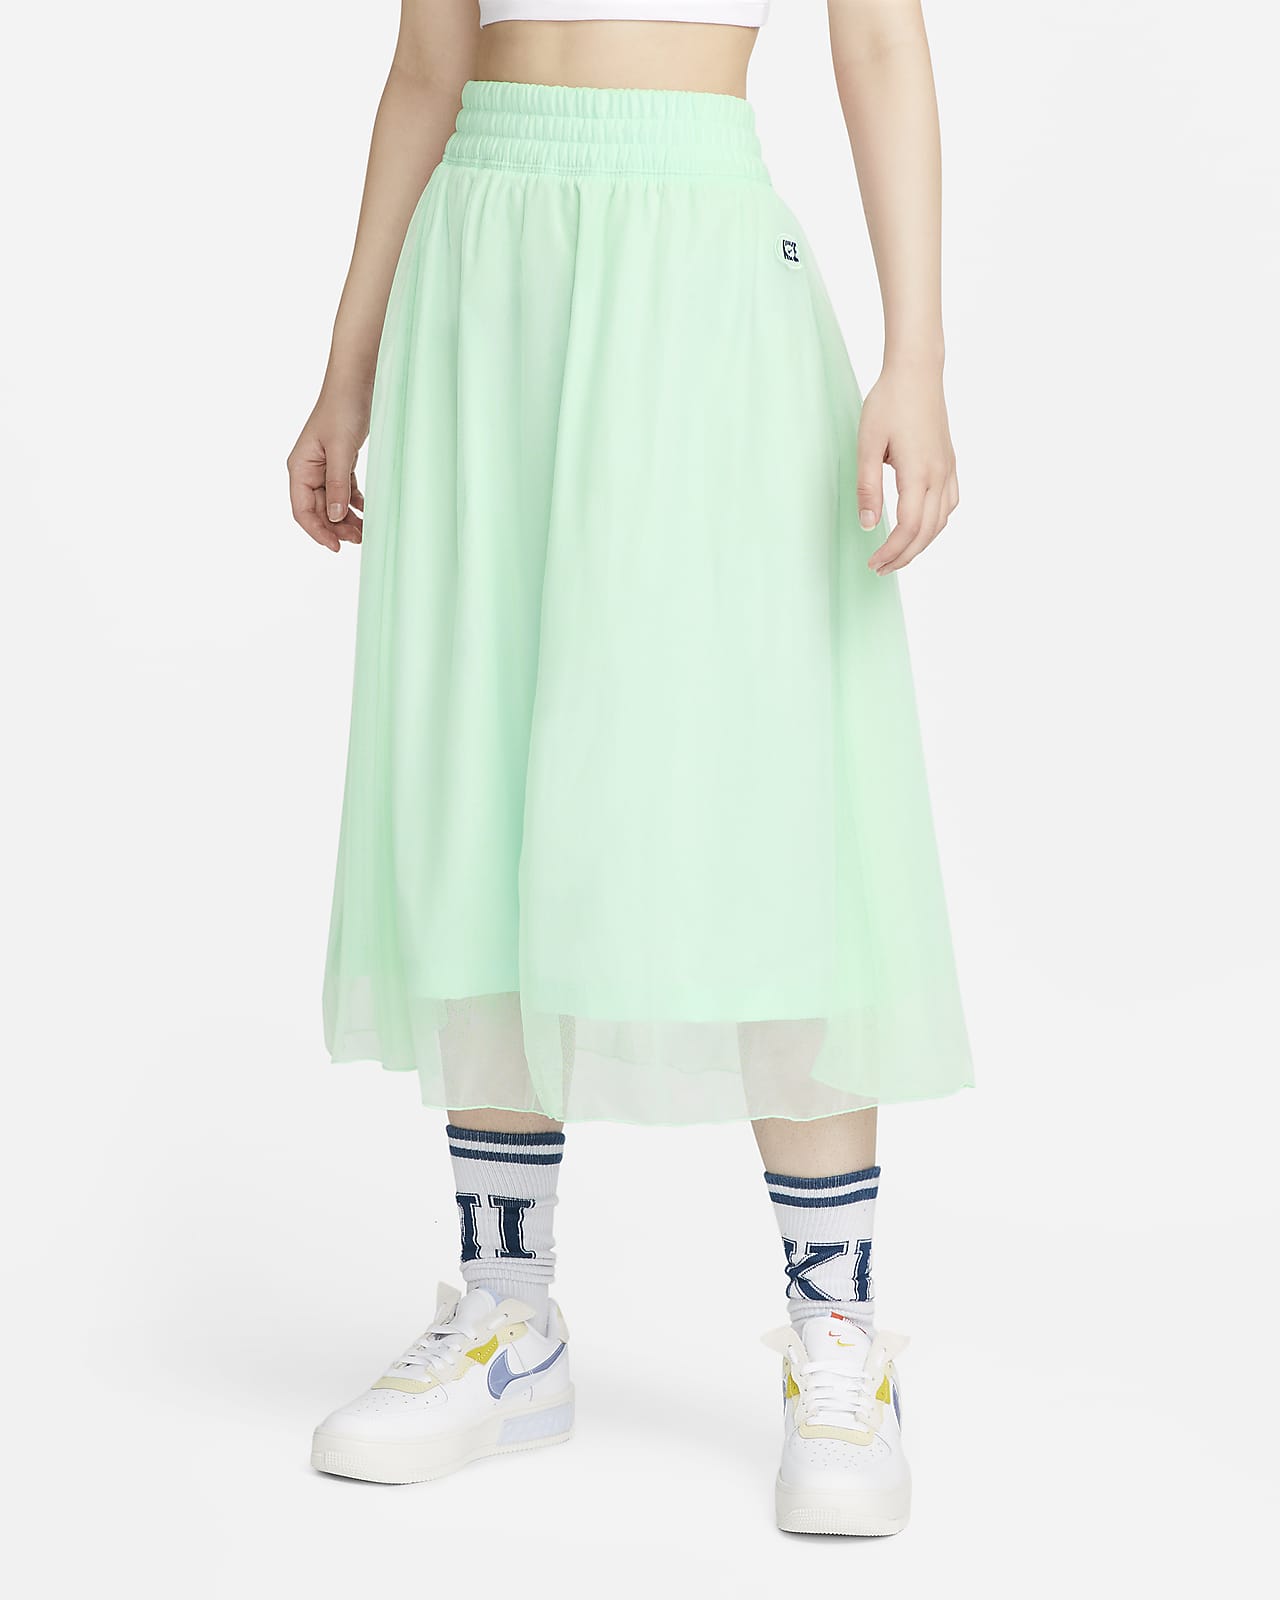 Nike Sportswear Women's Woven Skirt